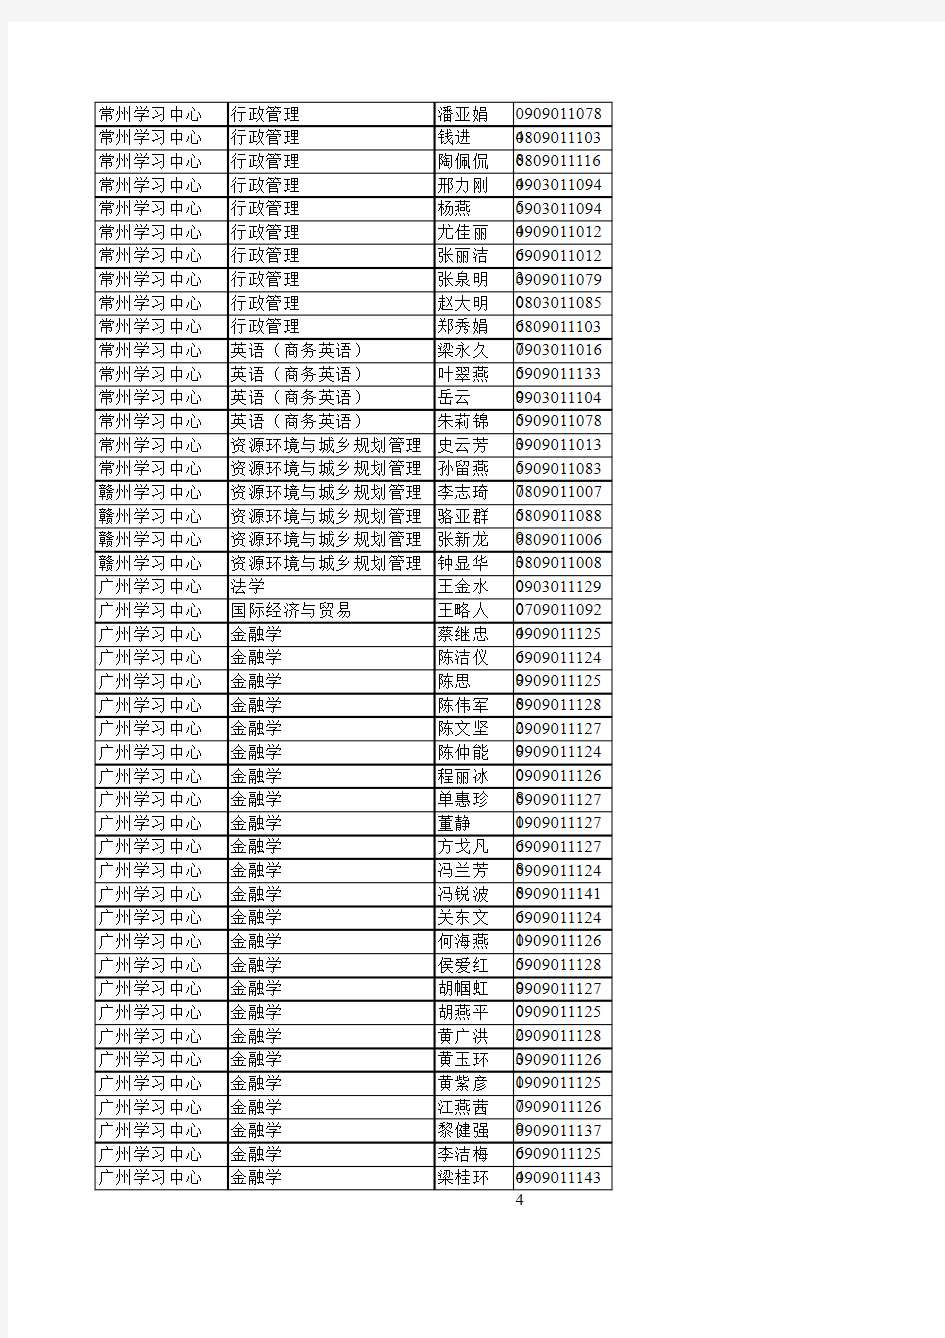 最终毕业名单(2012210)xls - 南京大学网络教育学院 专